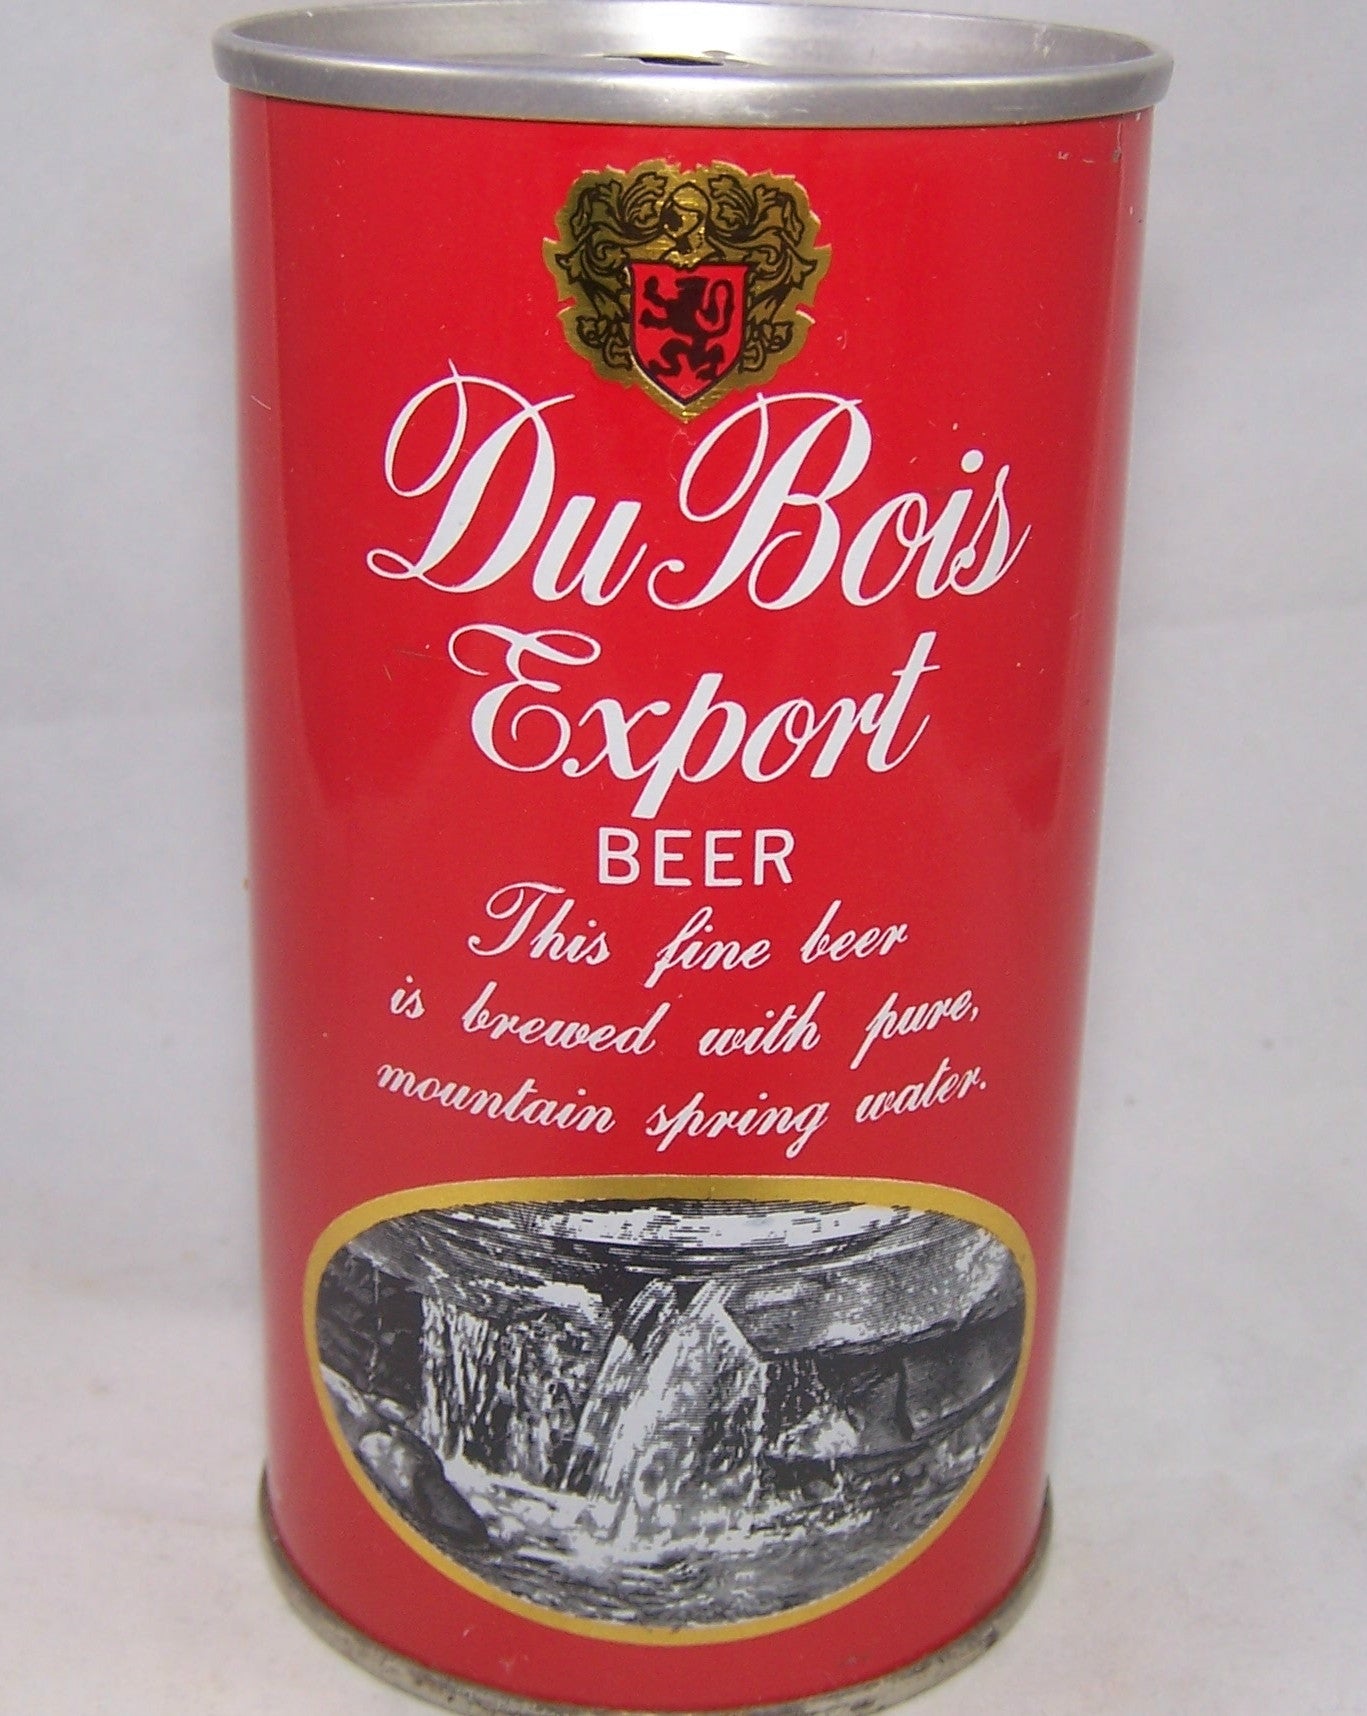 Du Bois Export Beer, USBC II 60-03, Grade 1 to 1/1+ Sold on 06/01/17